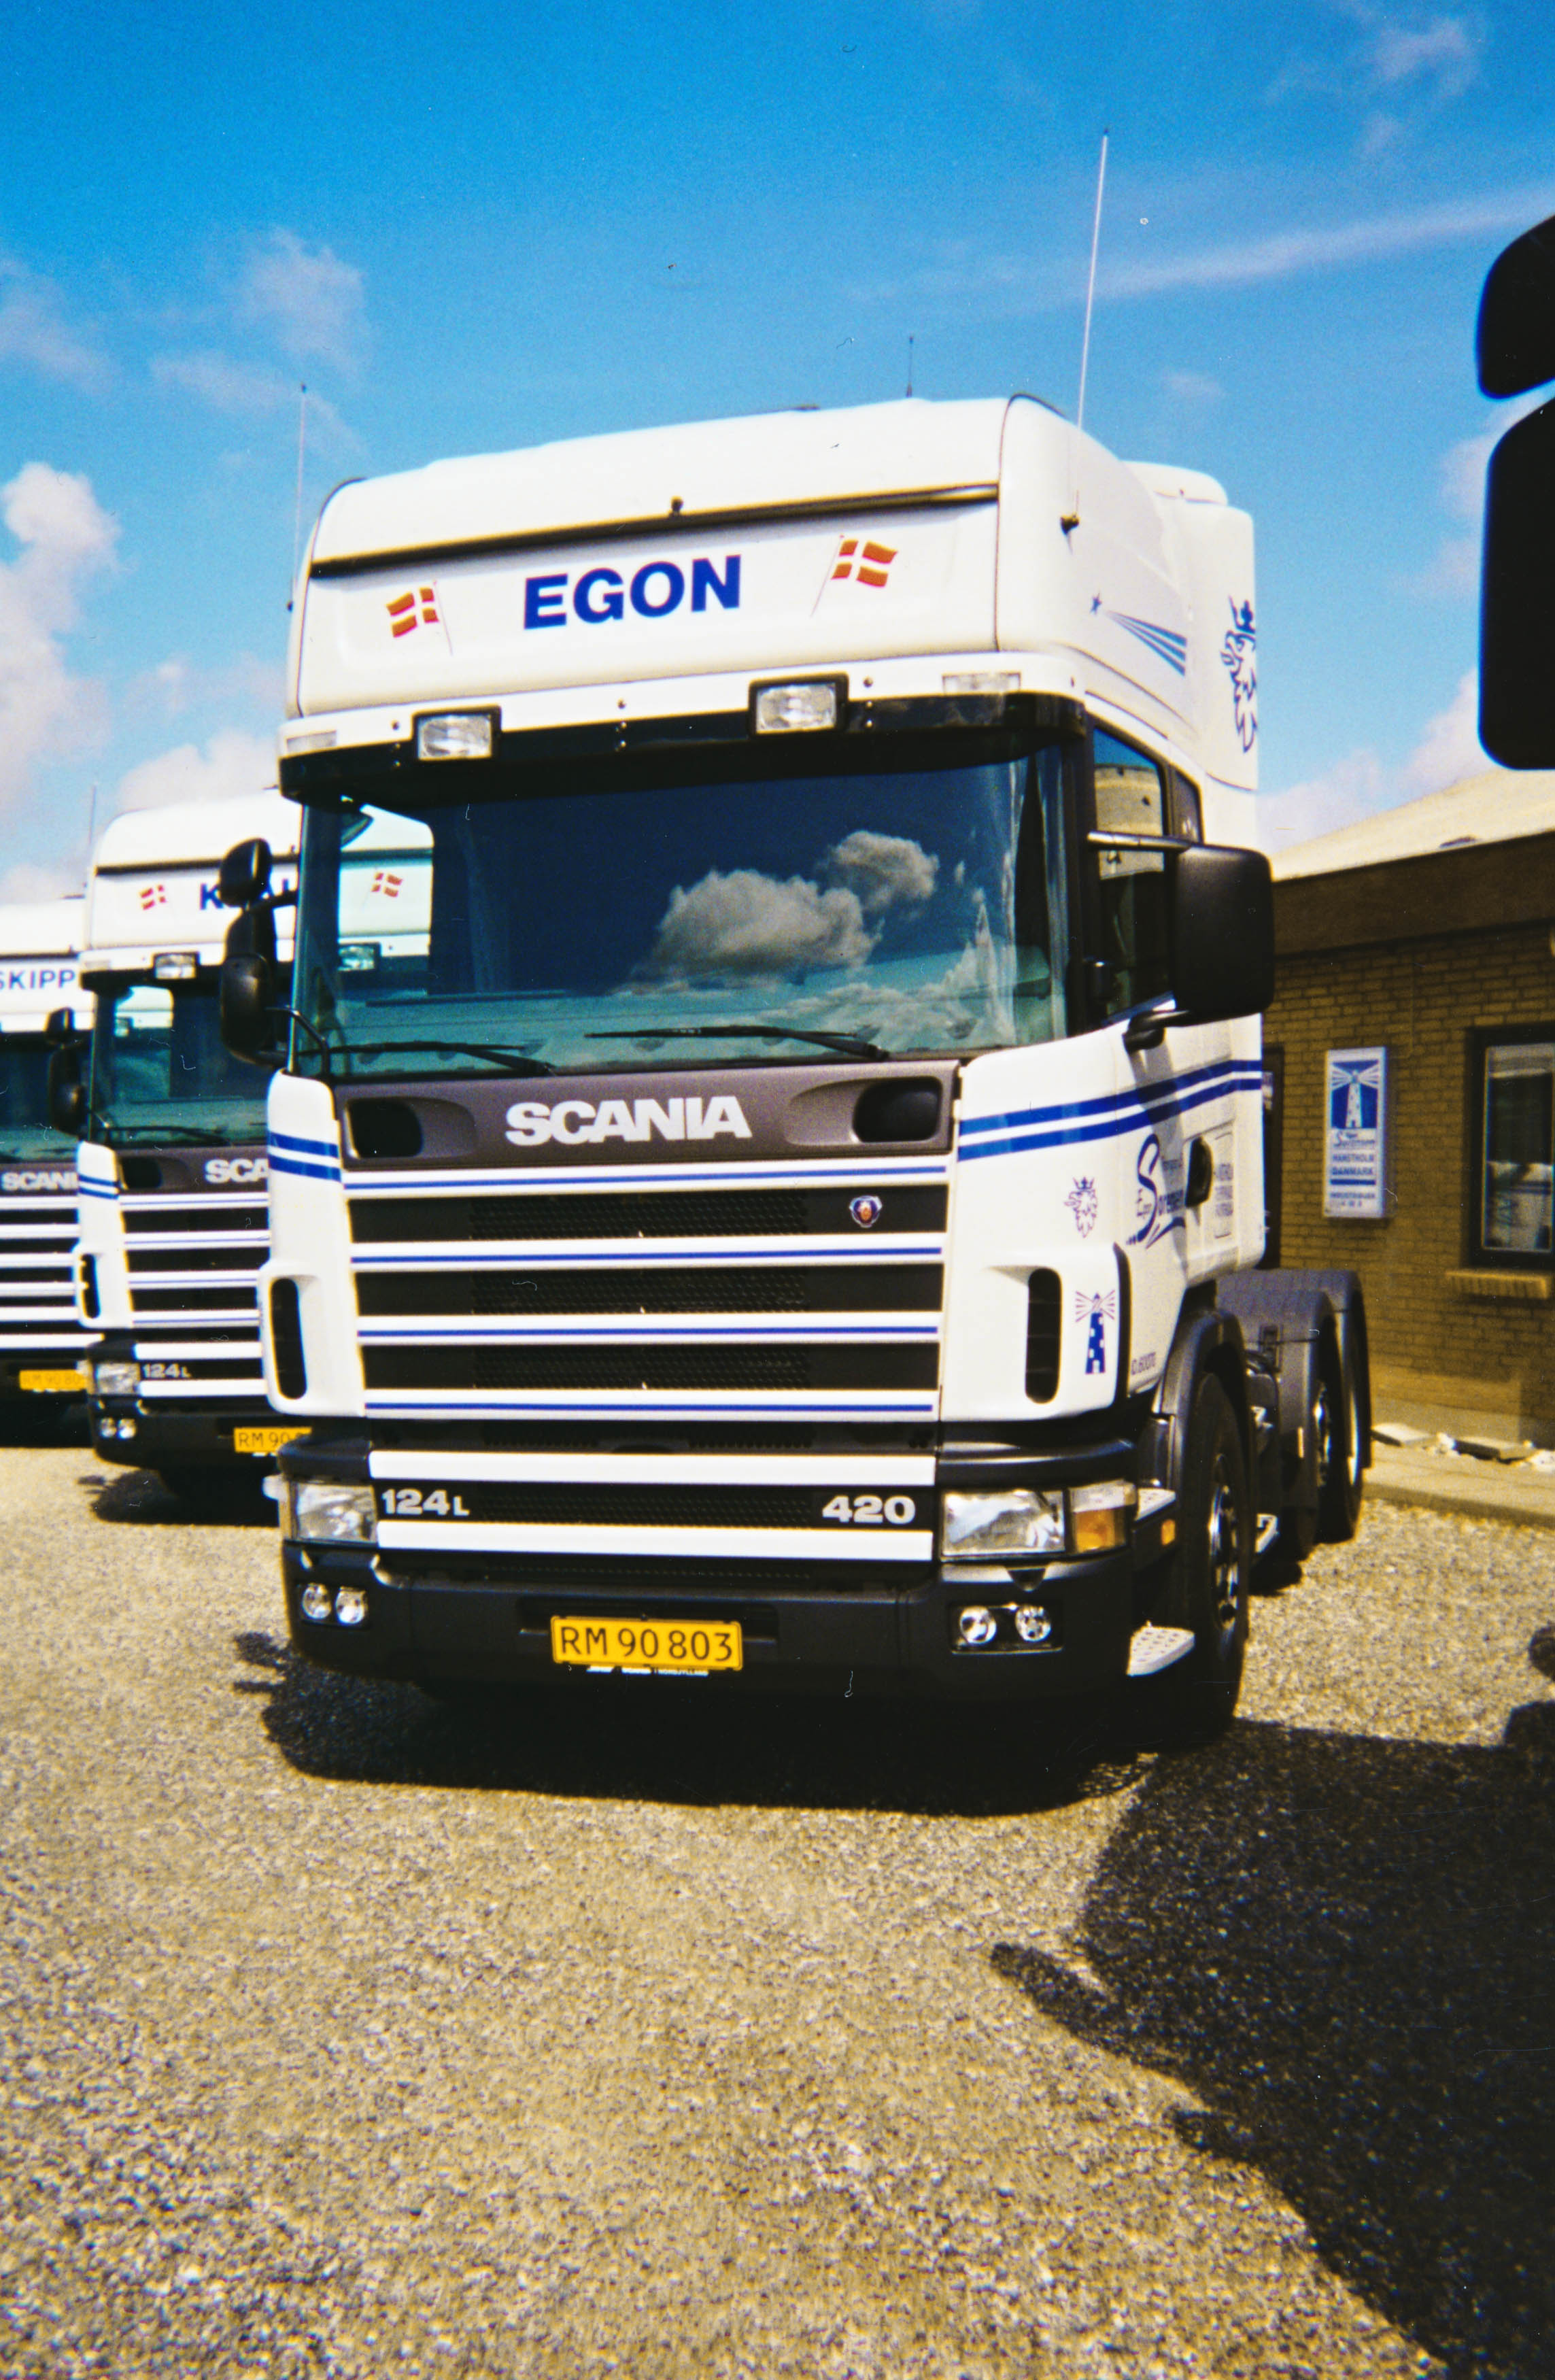 083 - 2001 - Scania 124 trækker Egon